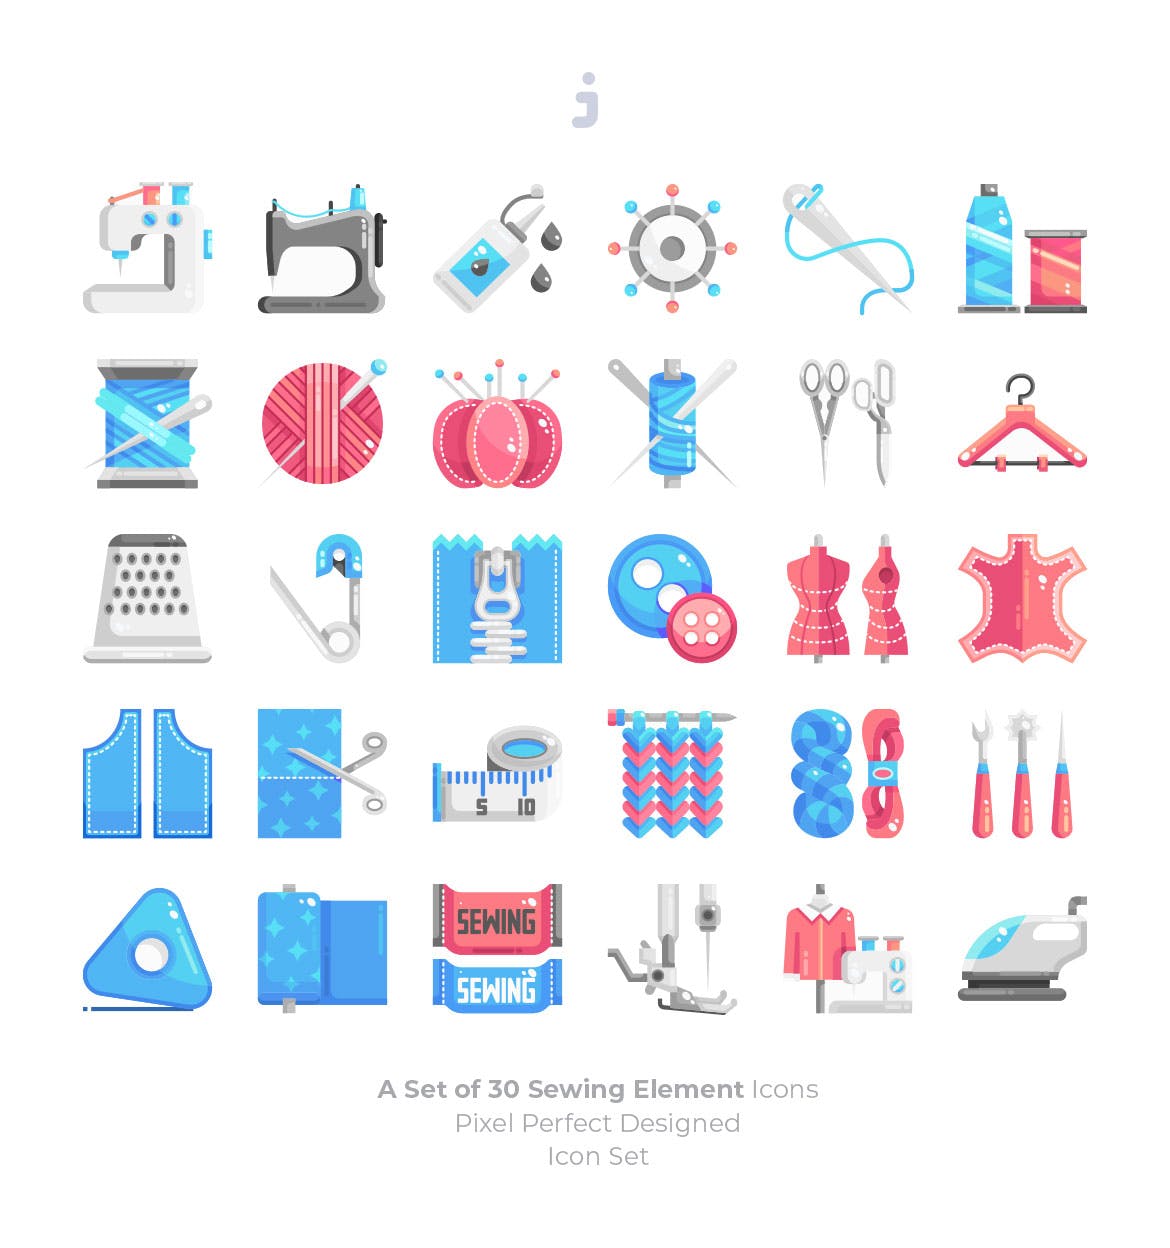 缝纫元素图标素材矢量图标sewing-element-ico